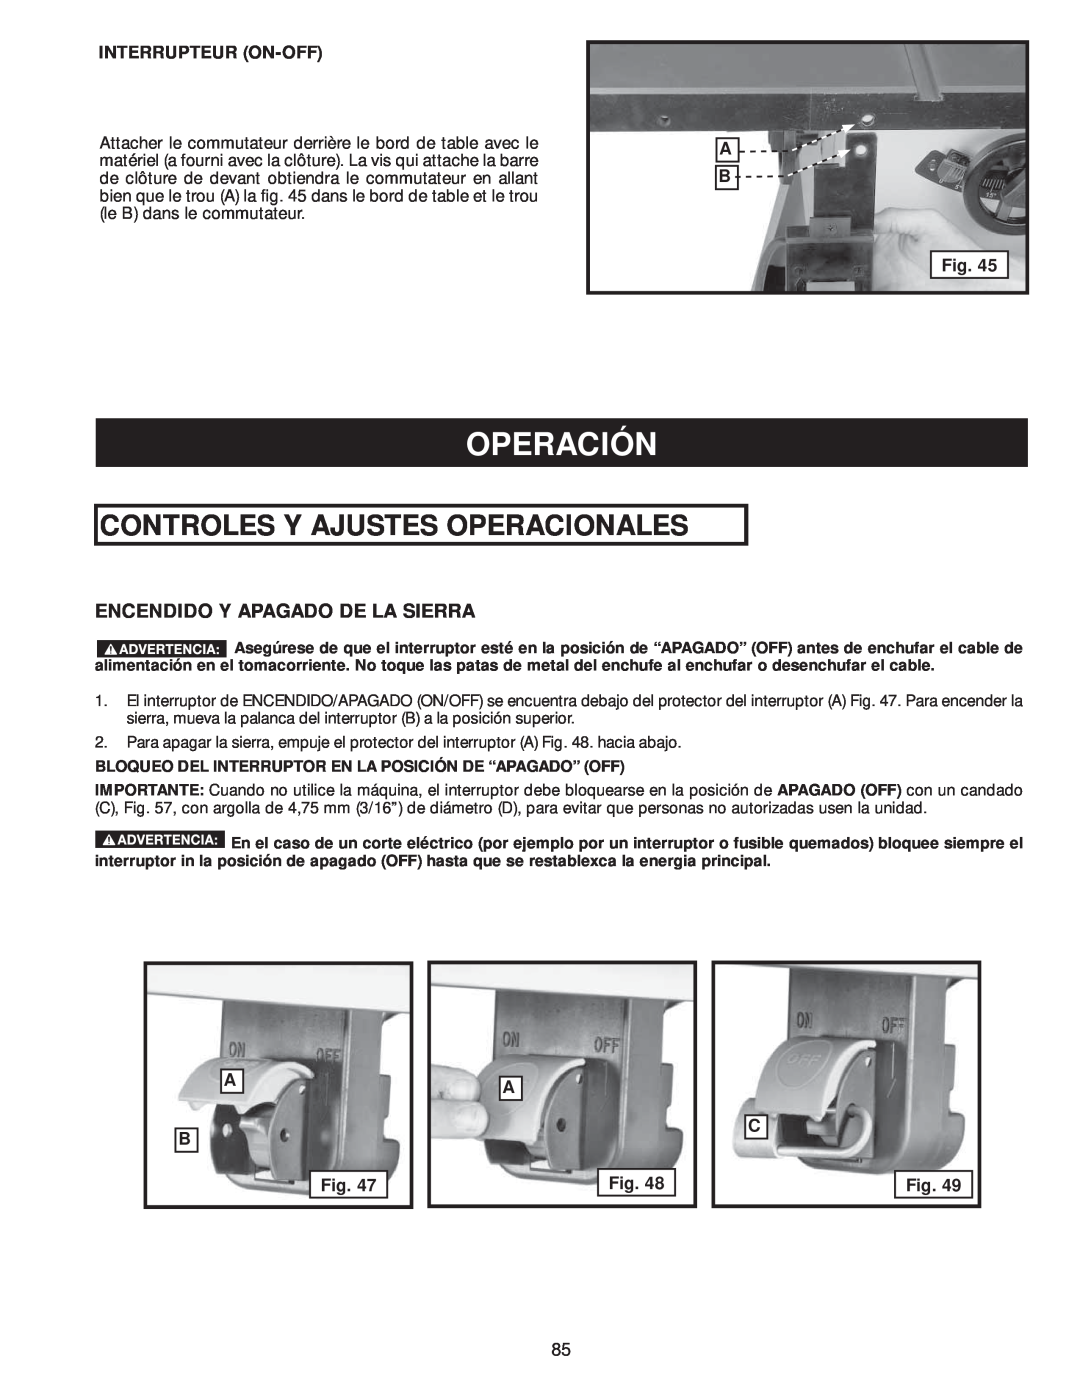 Delta 36-978, 36-979 instruction manual Operación, Controles Y Ajustes Operacionales, Encendido Y Apagado De La Sierra 